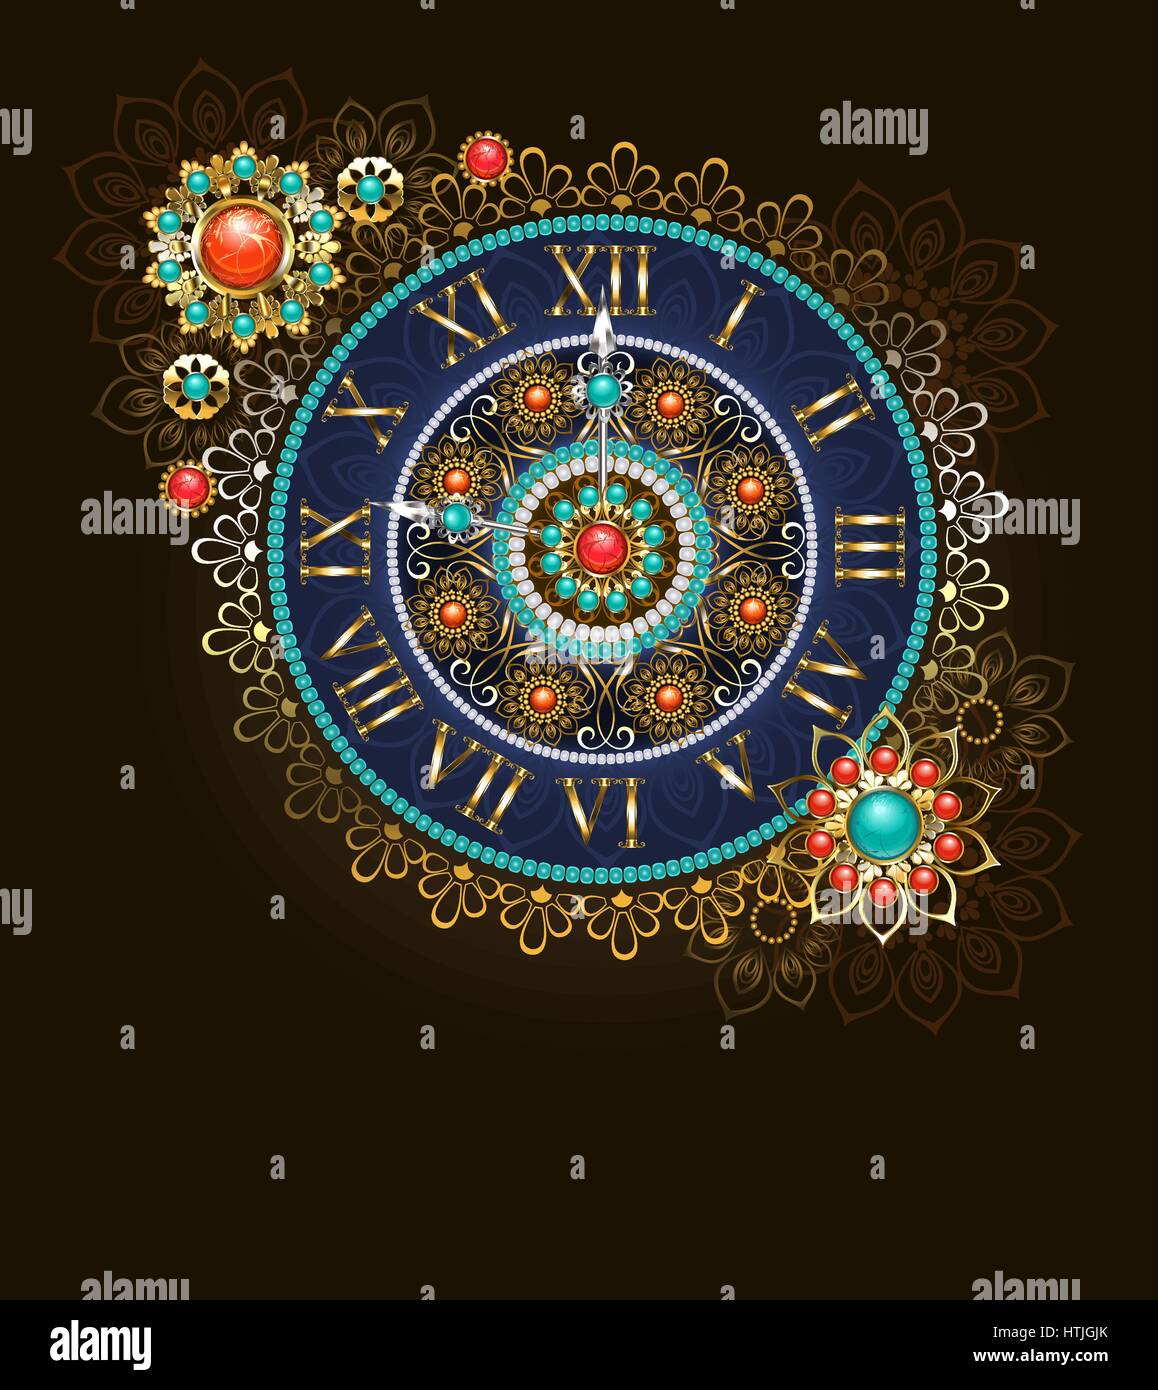 Bijoux, horloge ronde décorée avec des perles et des pierres semi-précieuses en style ethnique. Style Boho. Motif ethnique. Horloge ancienne. Illustration de Vecteur